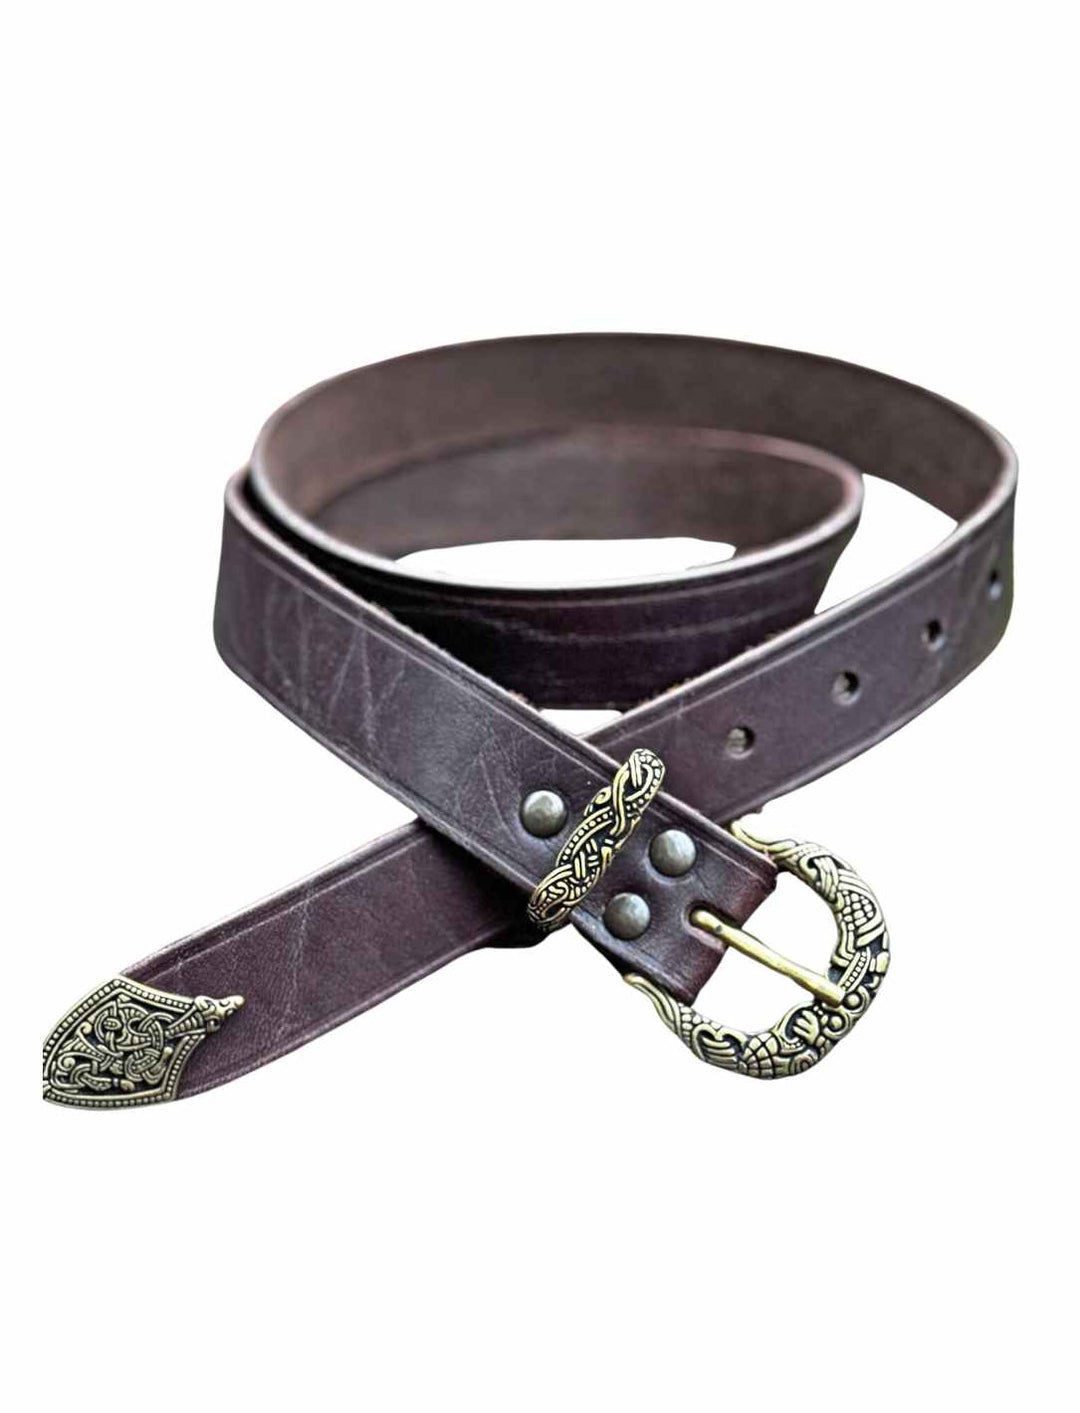 Wikinger-Gürtel im Borrestil mit detailreicher Schnalle und Riemenzunge – Borre Guardian Belt in braun auf reinweißem Hintergrund